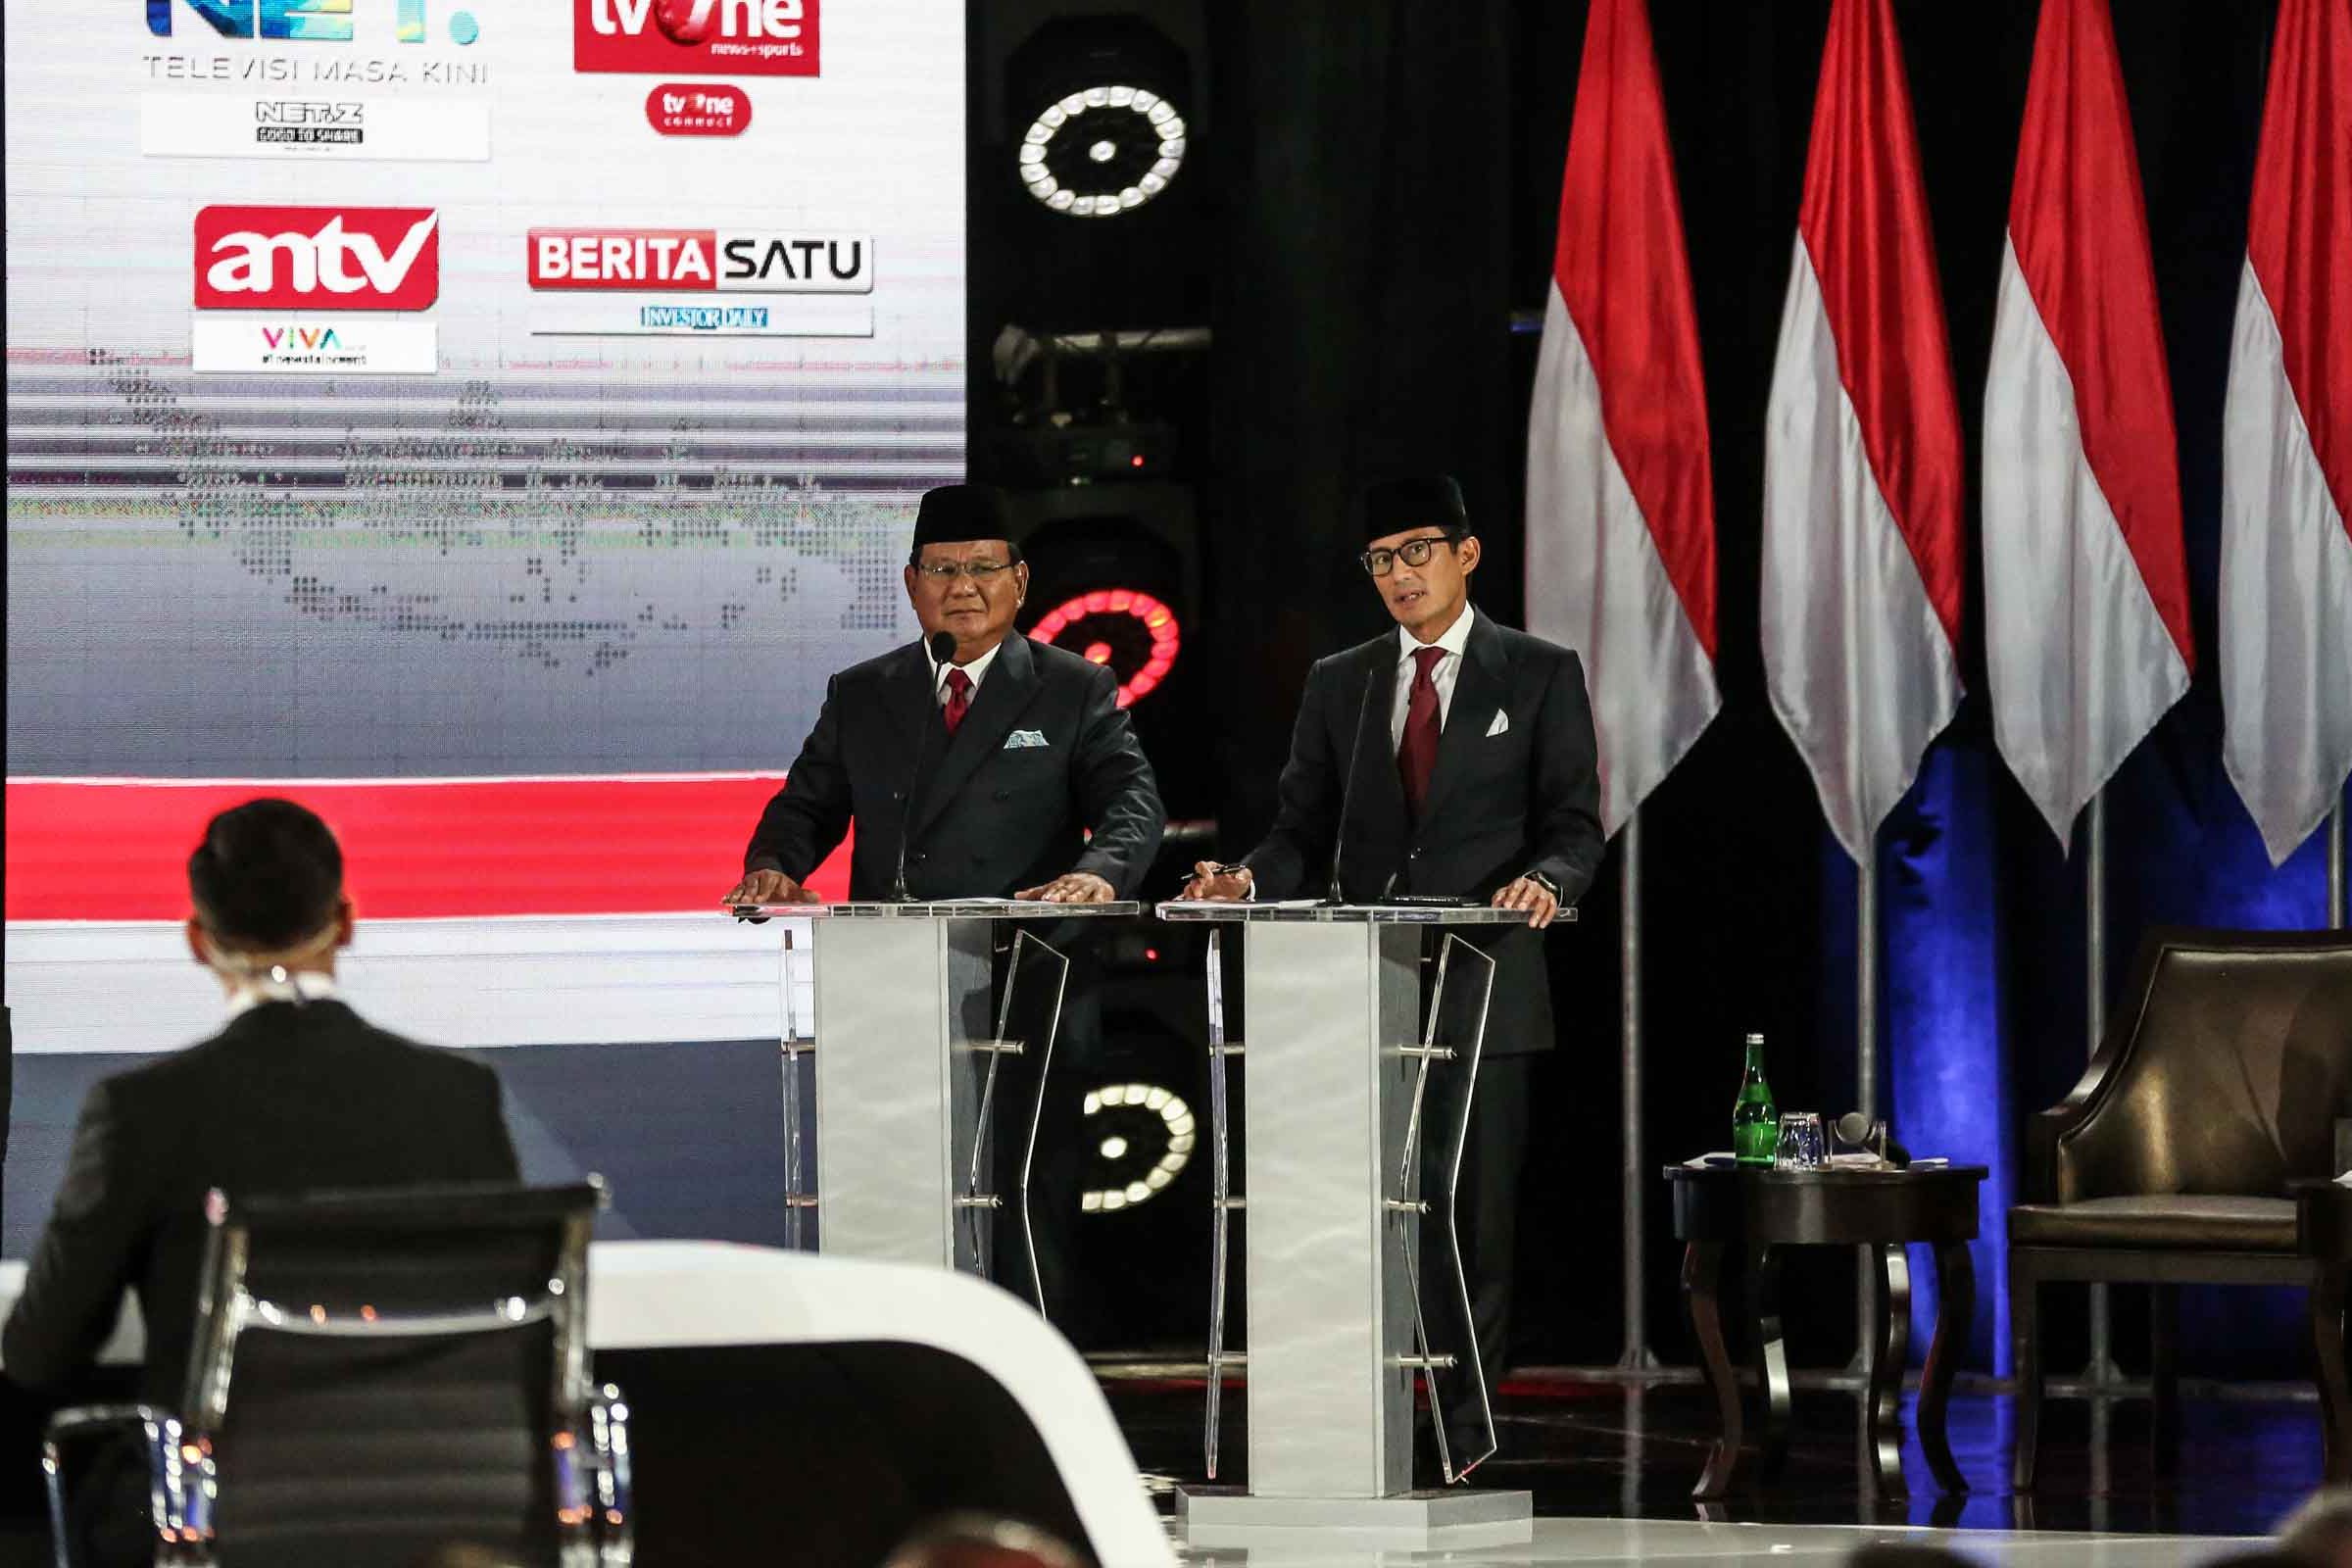 Erick Thohir: Prabowo Mendiskreditkan Soeharto dan SBY